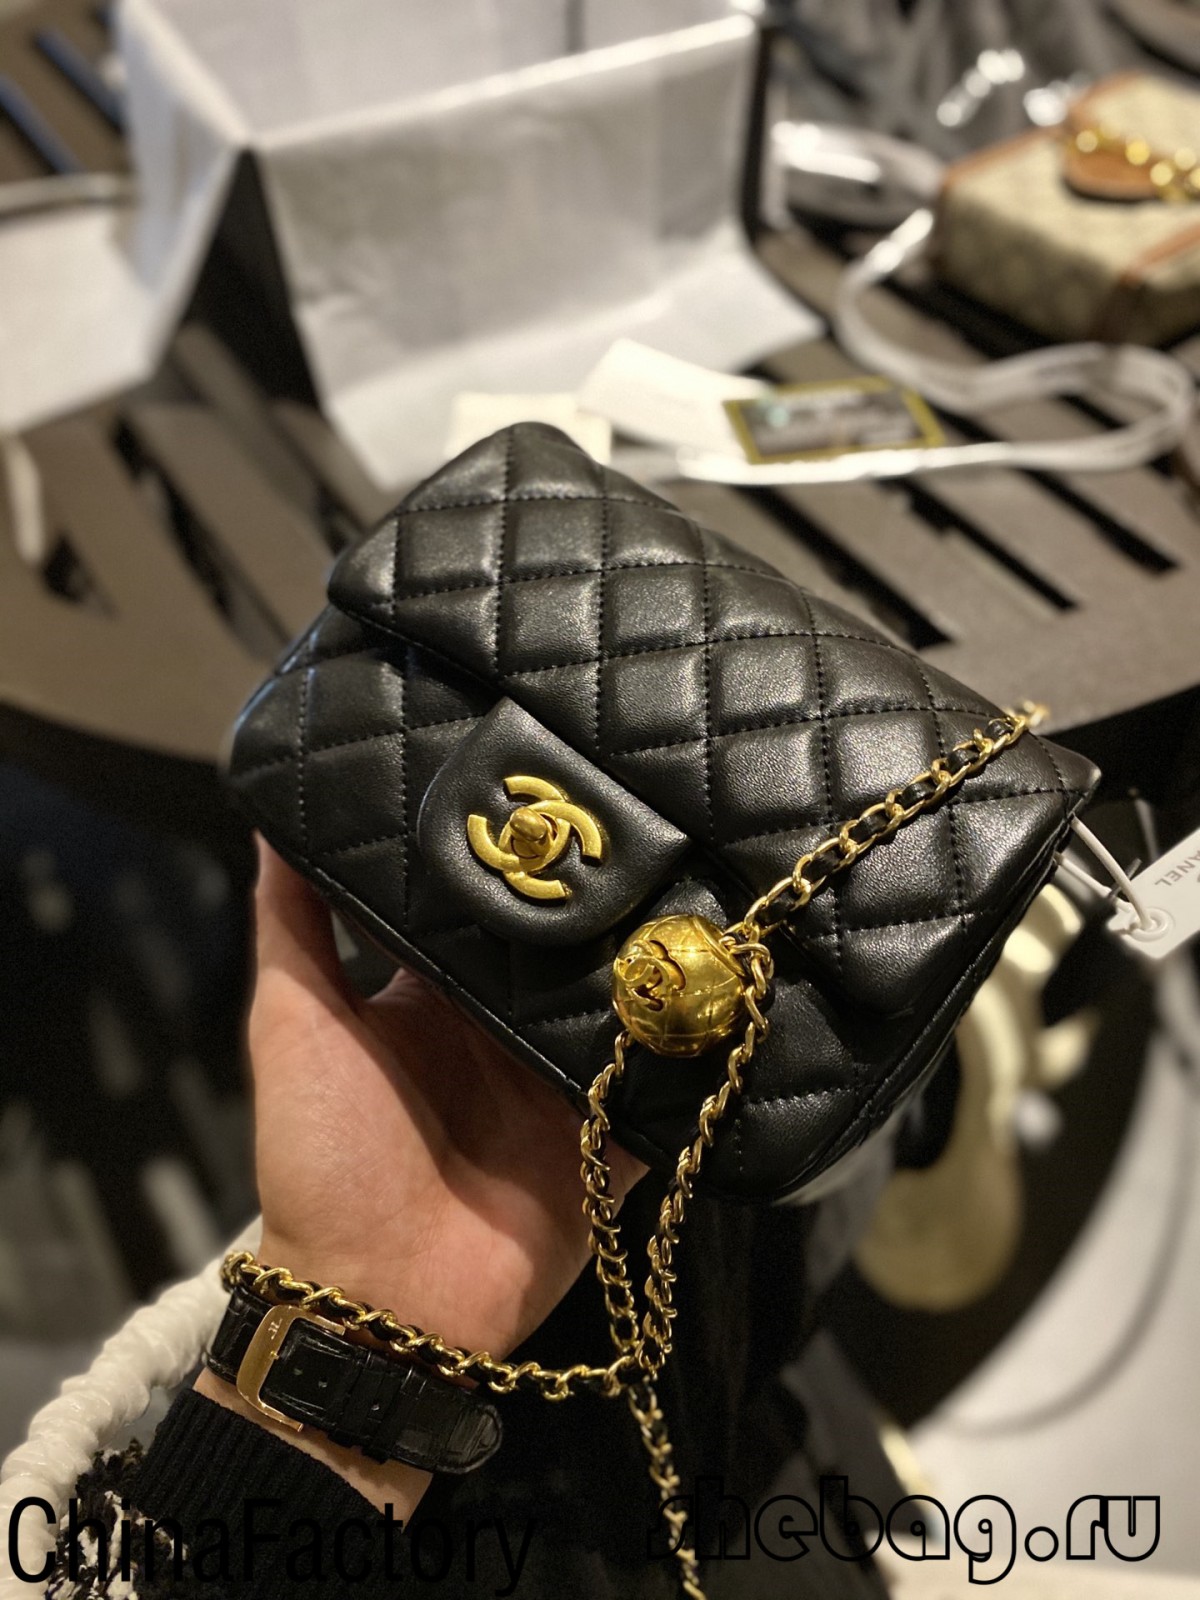 Replica di borsa Chanel 1: 1: pattina classica cù catena regulabile (2022 più calda) - Borsa in linea di falsi Louis Vuitton di a megliu qualità, Borsa di design di replica ru